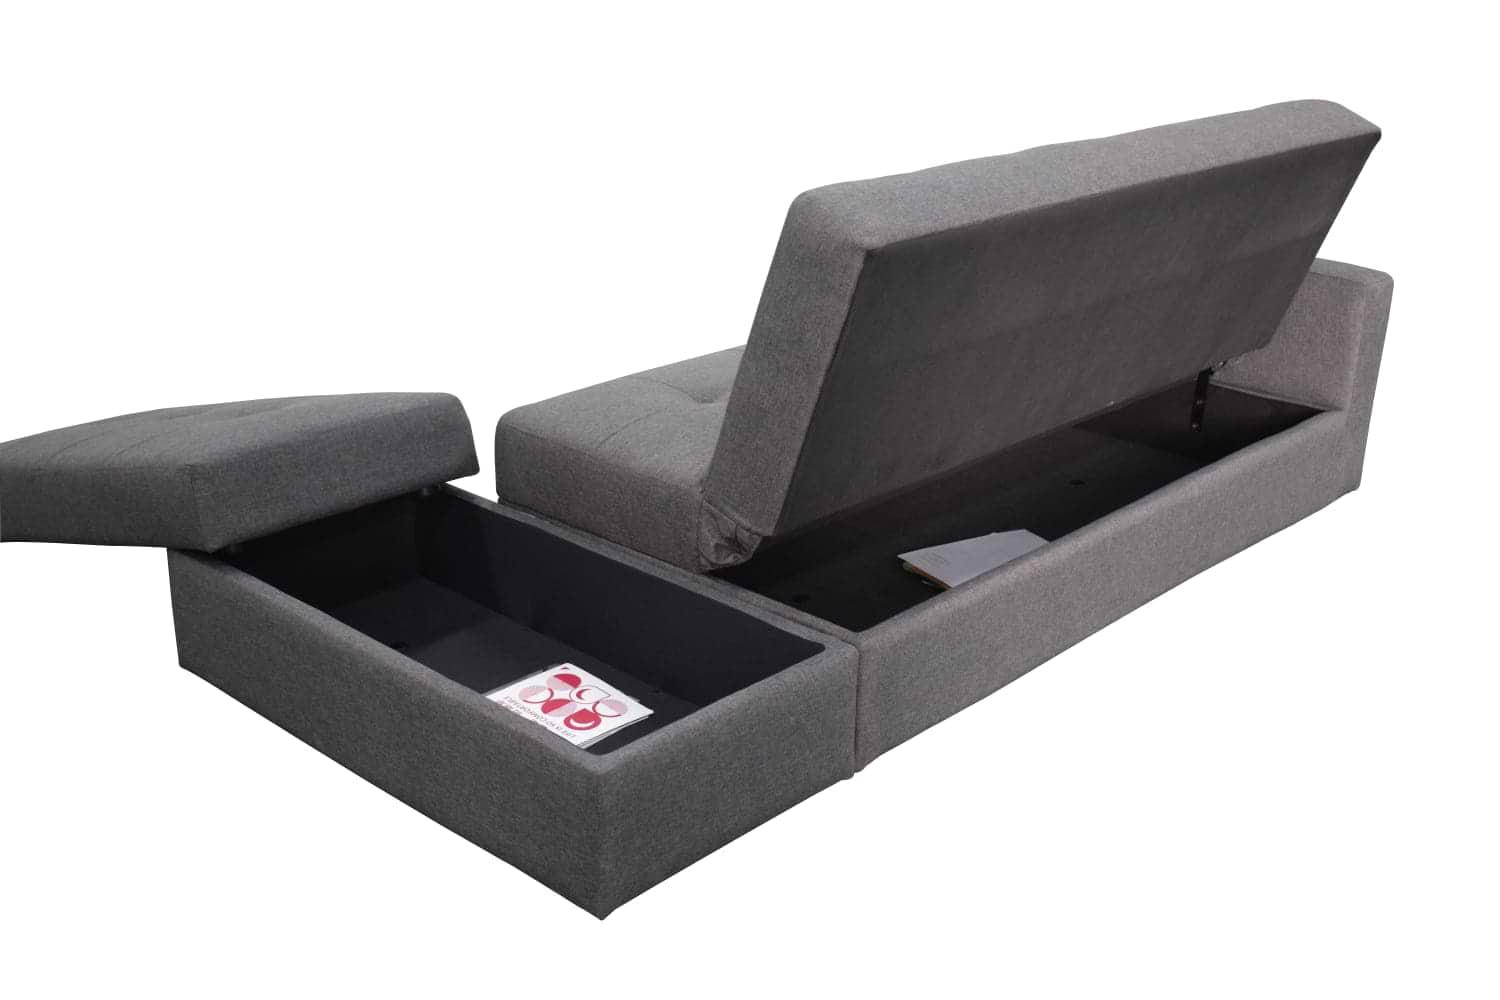 ספה מעוצבת נפתחת למיטה דגם מורן הכוללת הדום וארגז מצעים LEONARDO - צבע אפור כהה